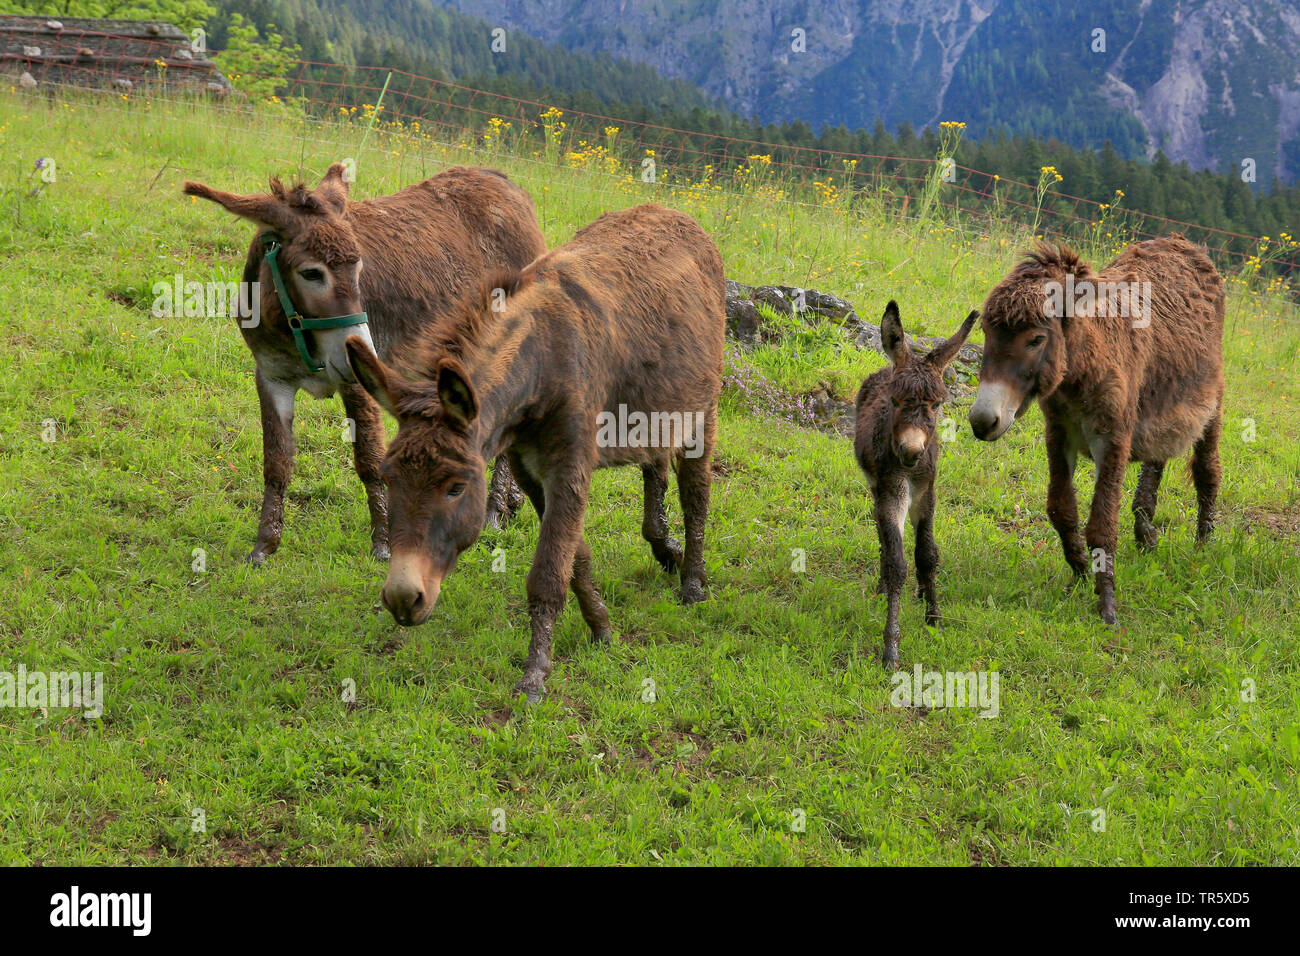 Domestic donkey (Equus asinus asinus), donkey family on a pasture, Germany Stock Photo